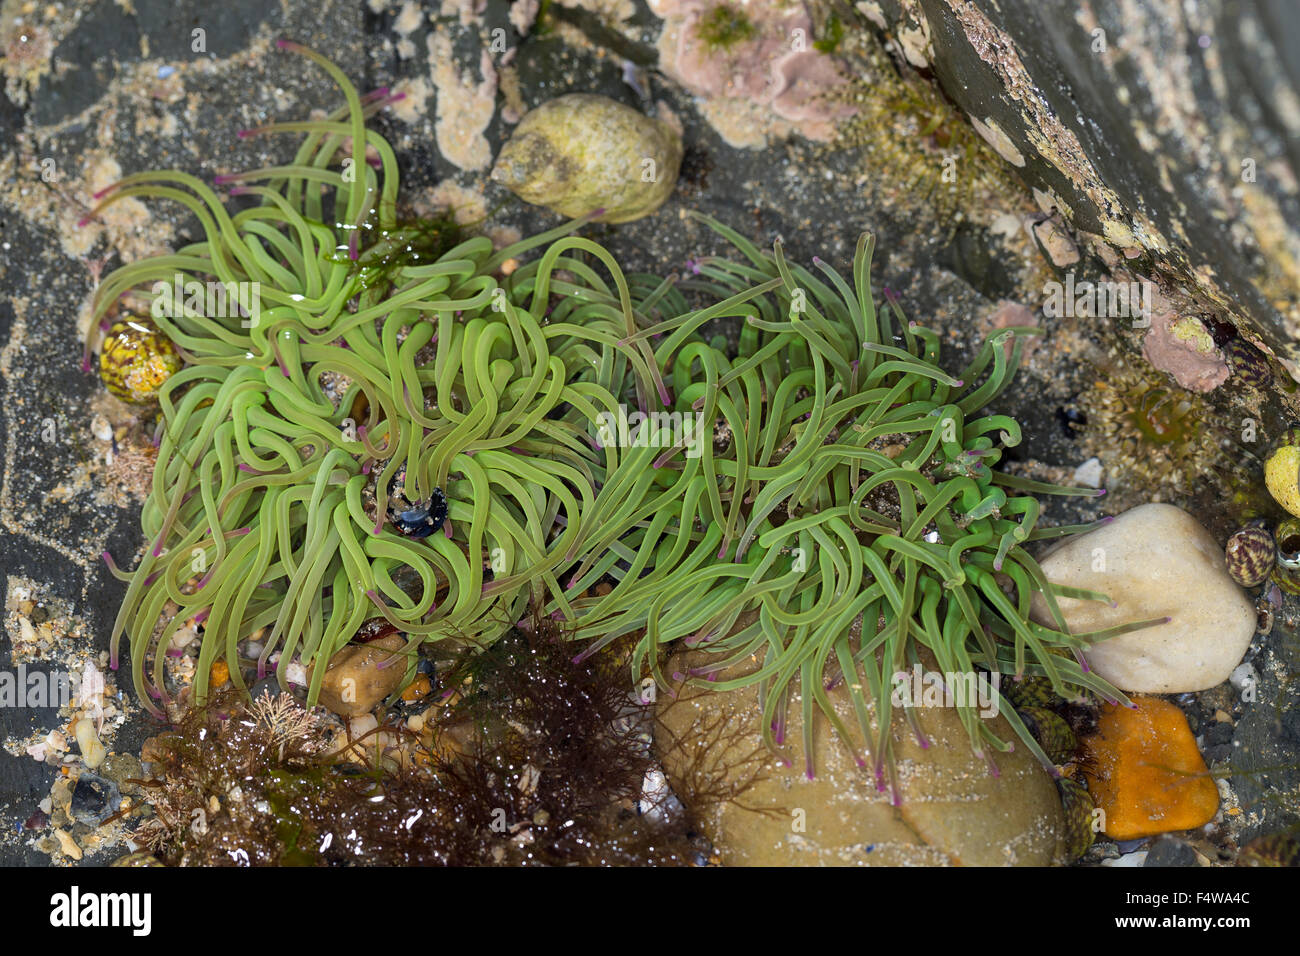 Snakelocks anemone, Wachsrose, Anemonia viridis, Anemonia sulcata, Anémone de mer verte, Actinie verte, sea anemones Stock Photo